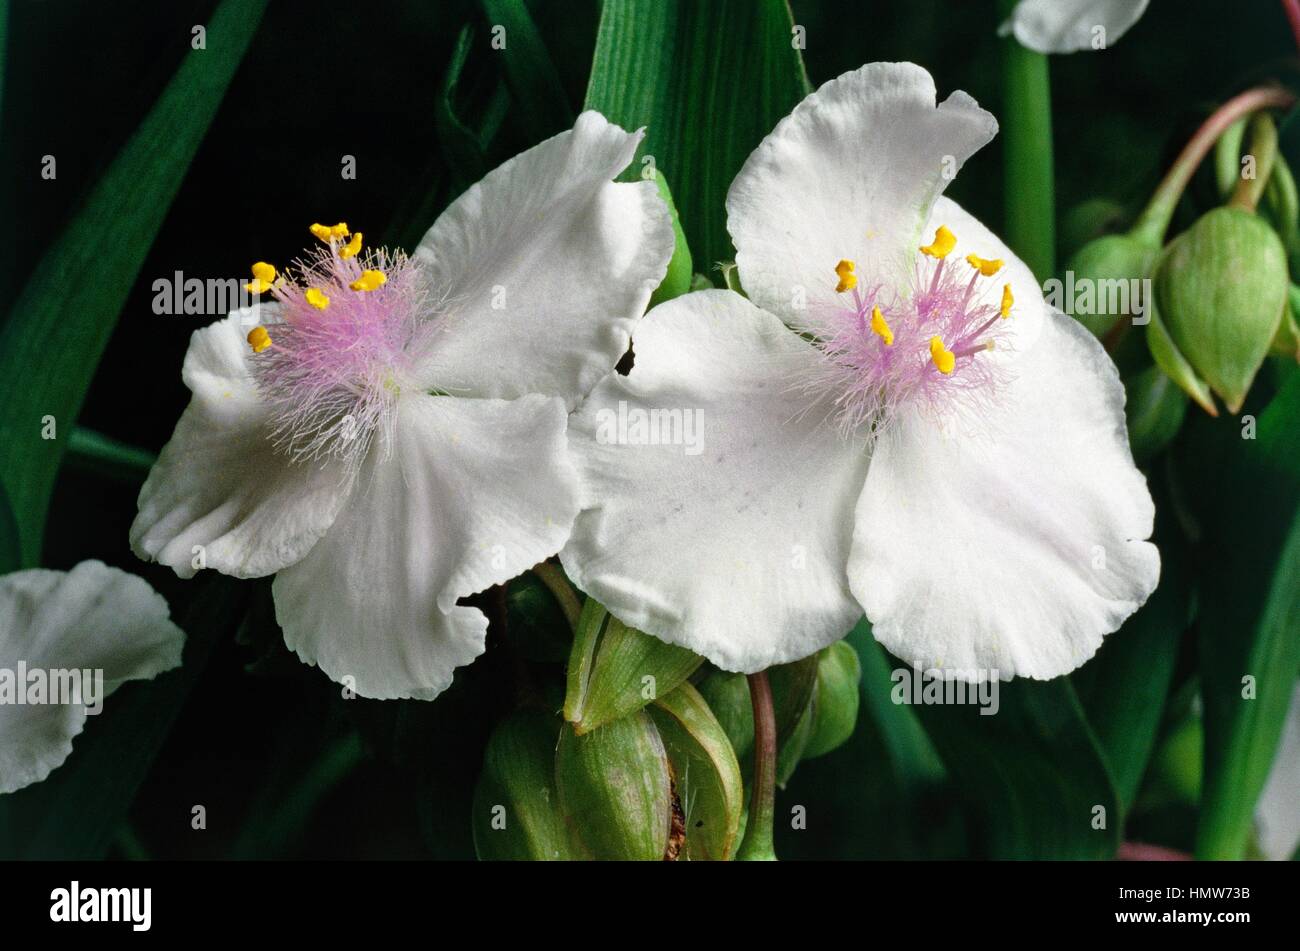 Spiderwort (Tradescantia sp), Commelinaceae. Stock Photo